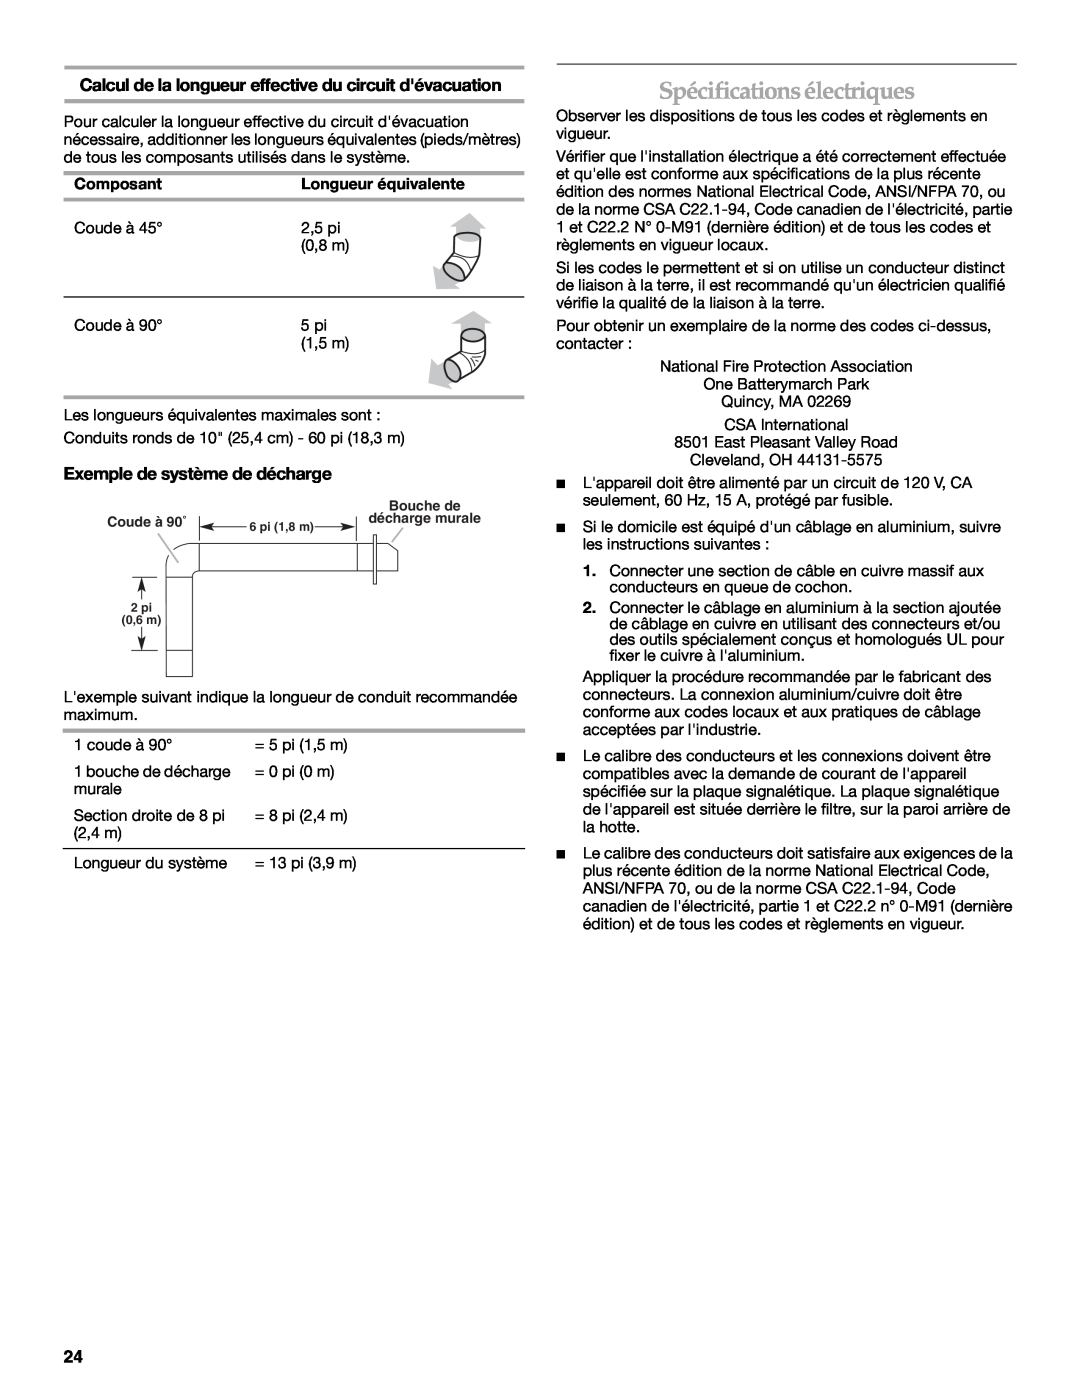 KitchenAid W10331007B Spécificationsélectriques, Calcul de la longueur effective du circuit dévacuation, Composant 